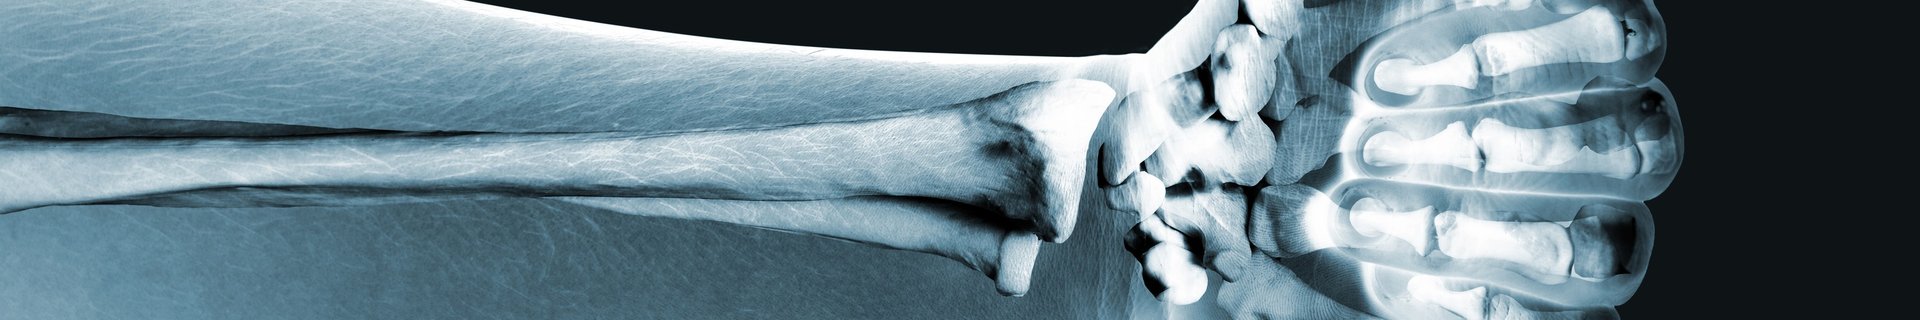 Skelett av underarm och hand